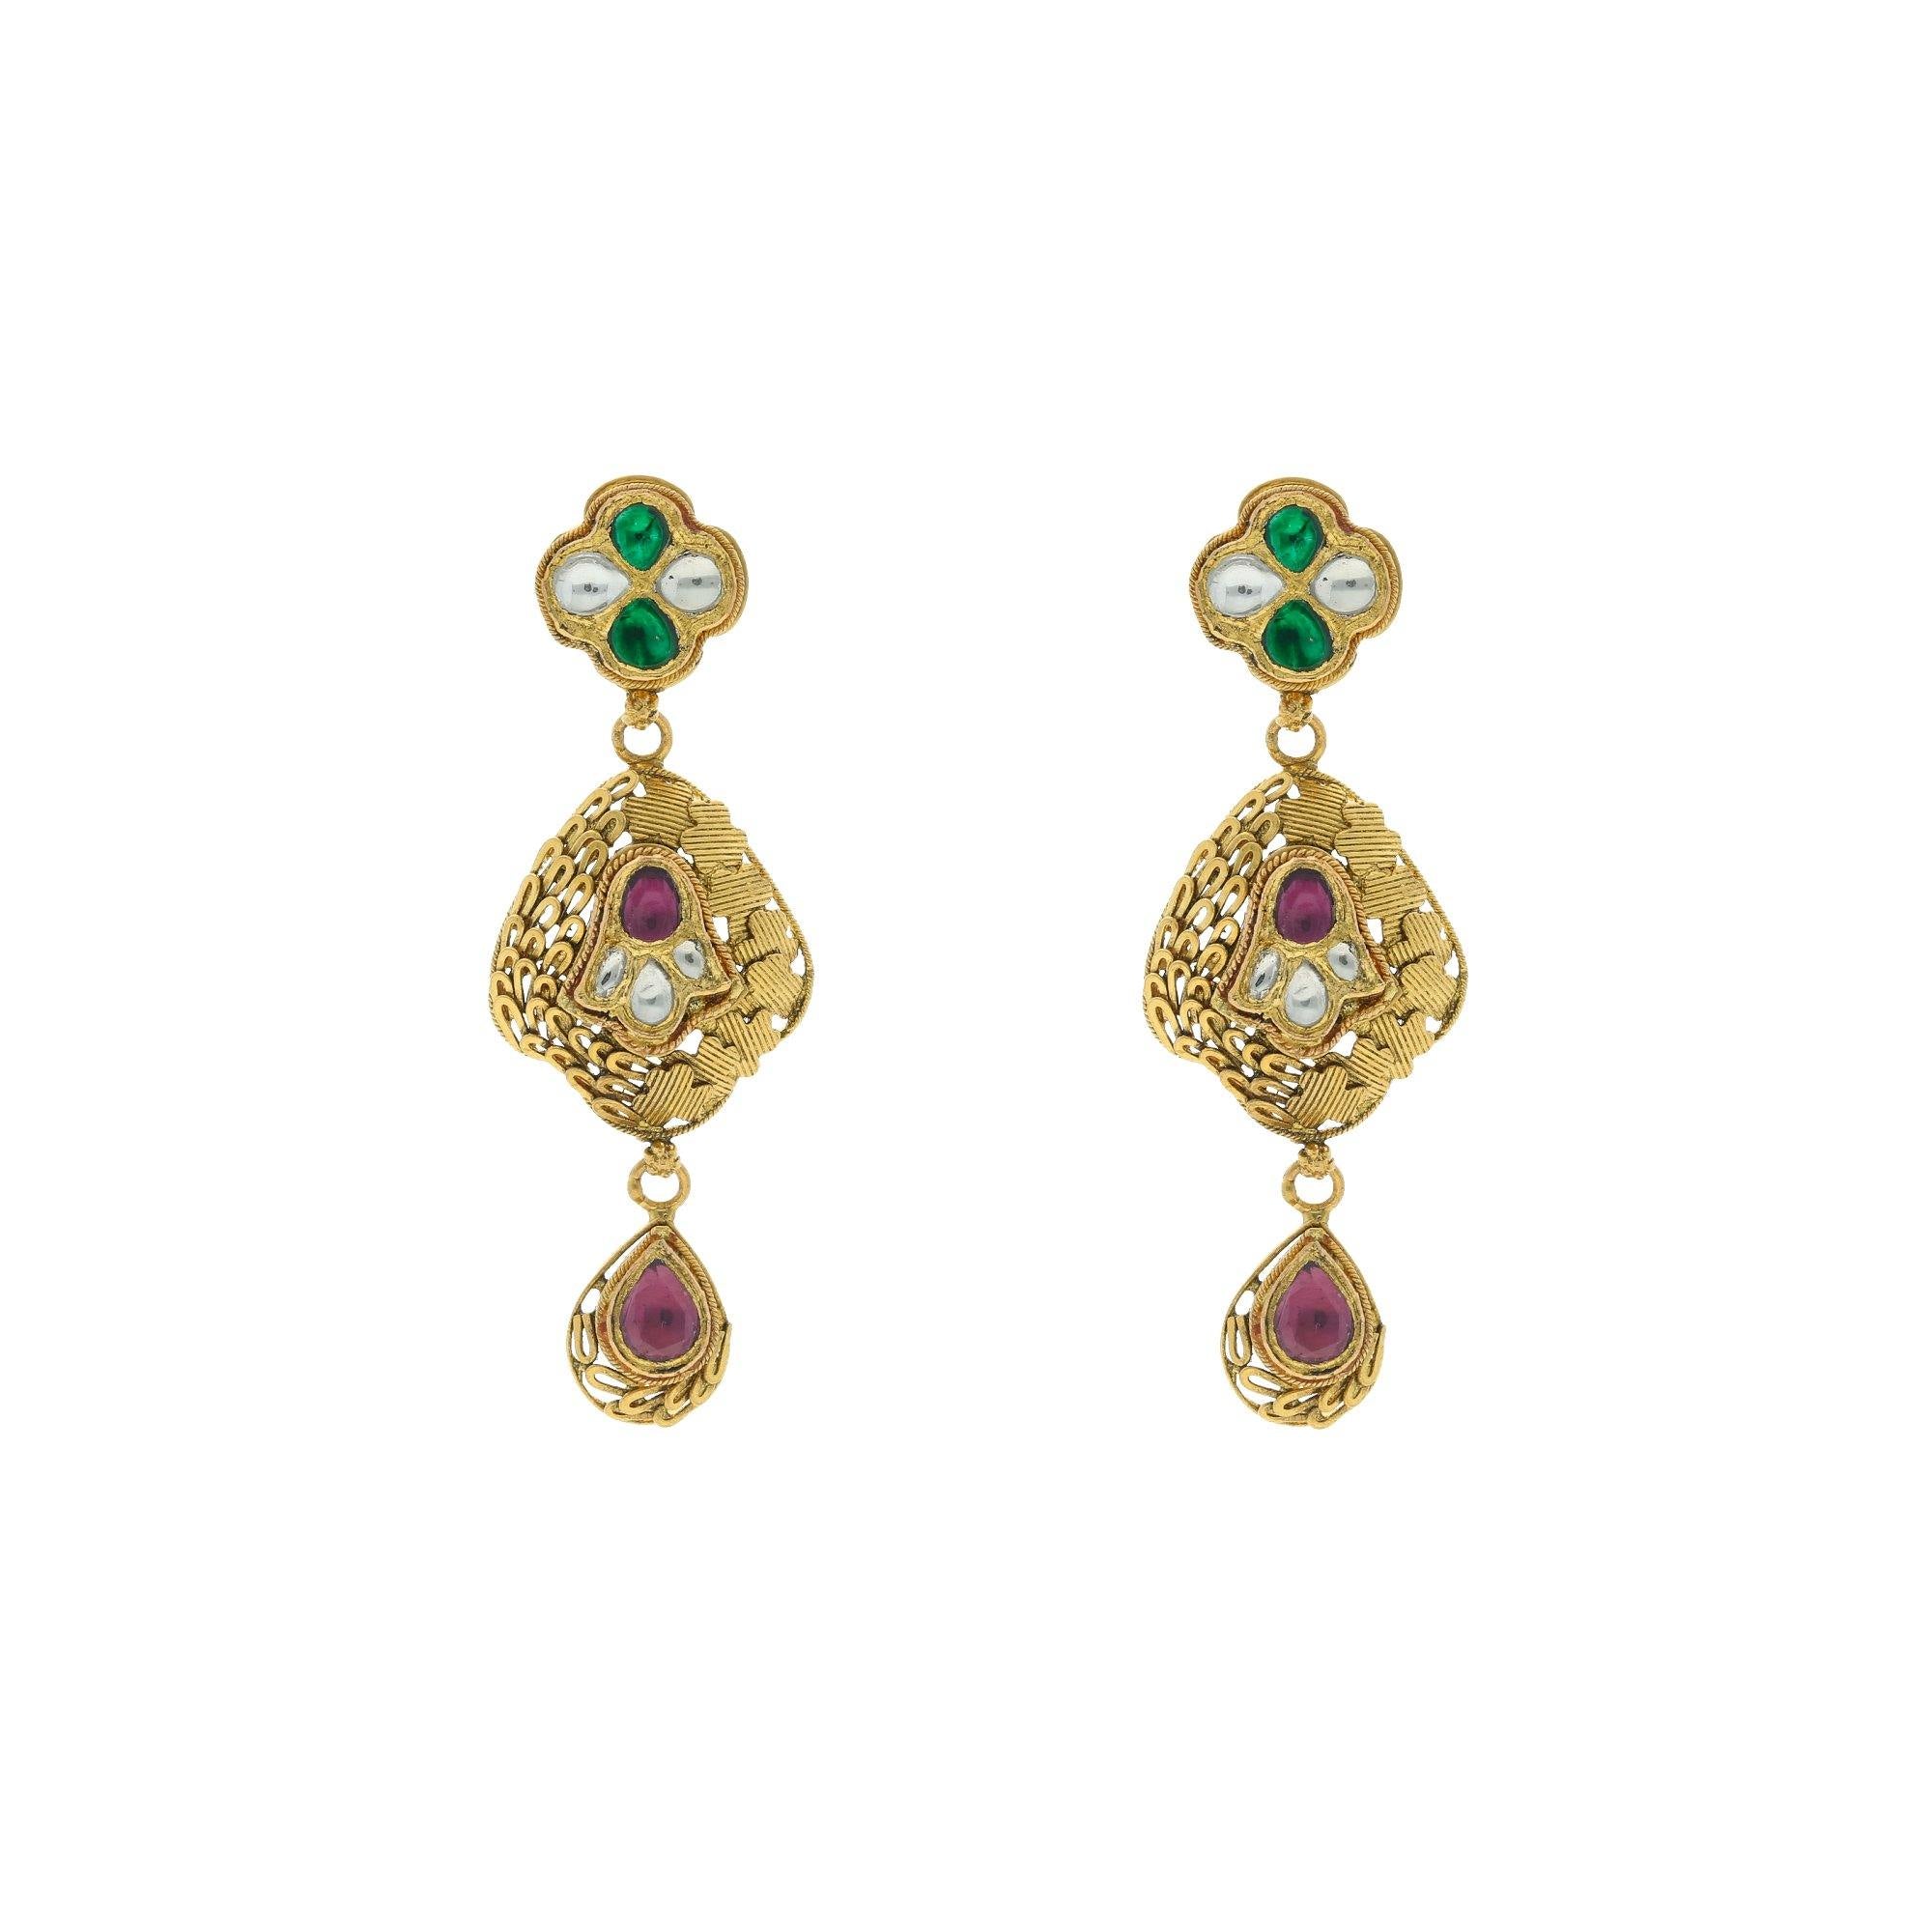 Fancy Earrings | New gold jewellery designs, Gold earrings models, Long  chain earrings gold